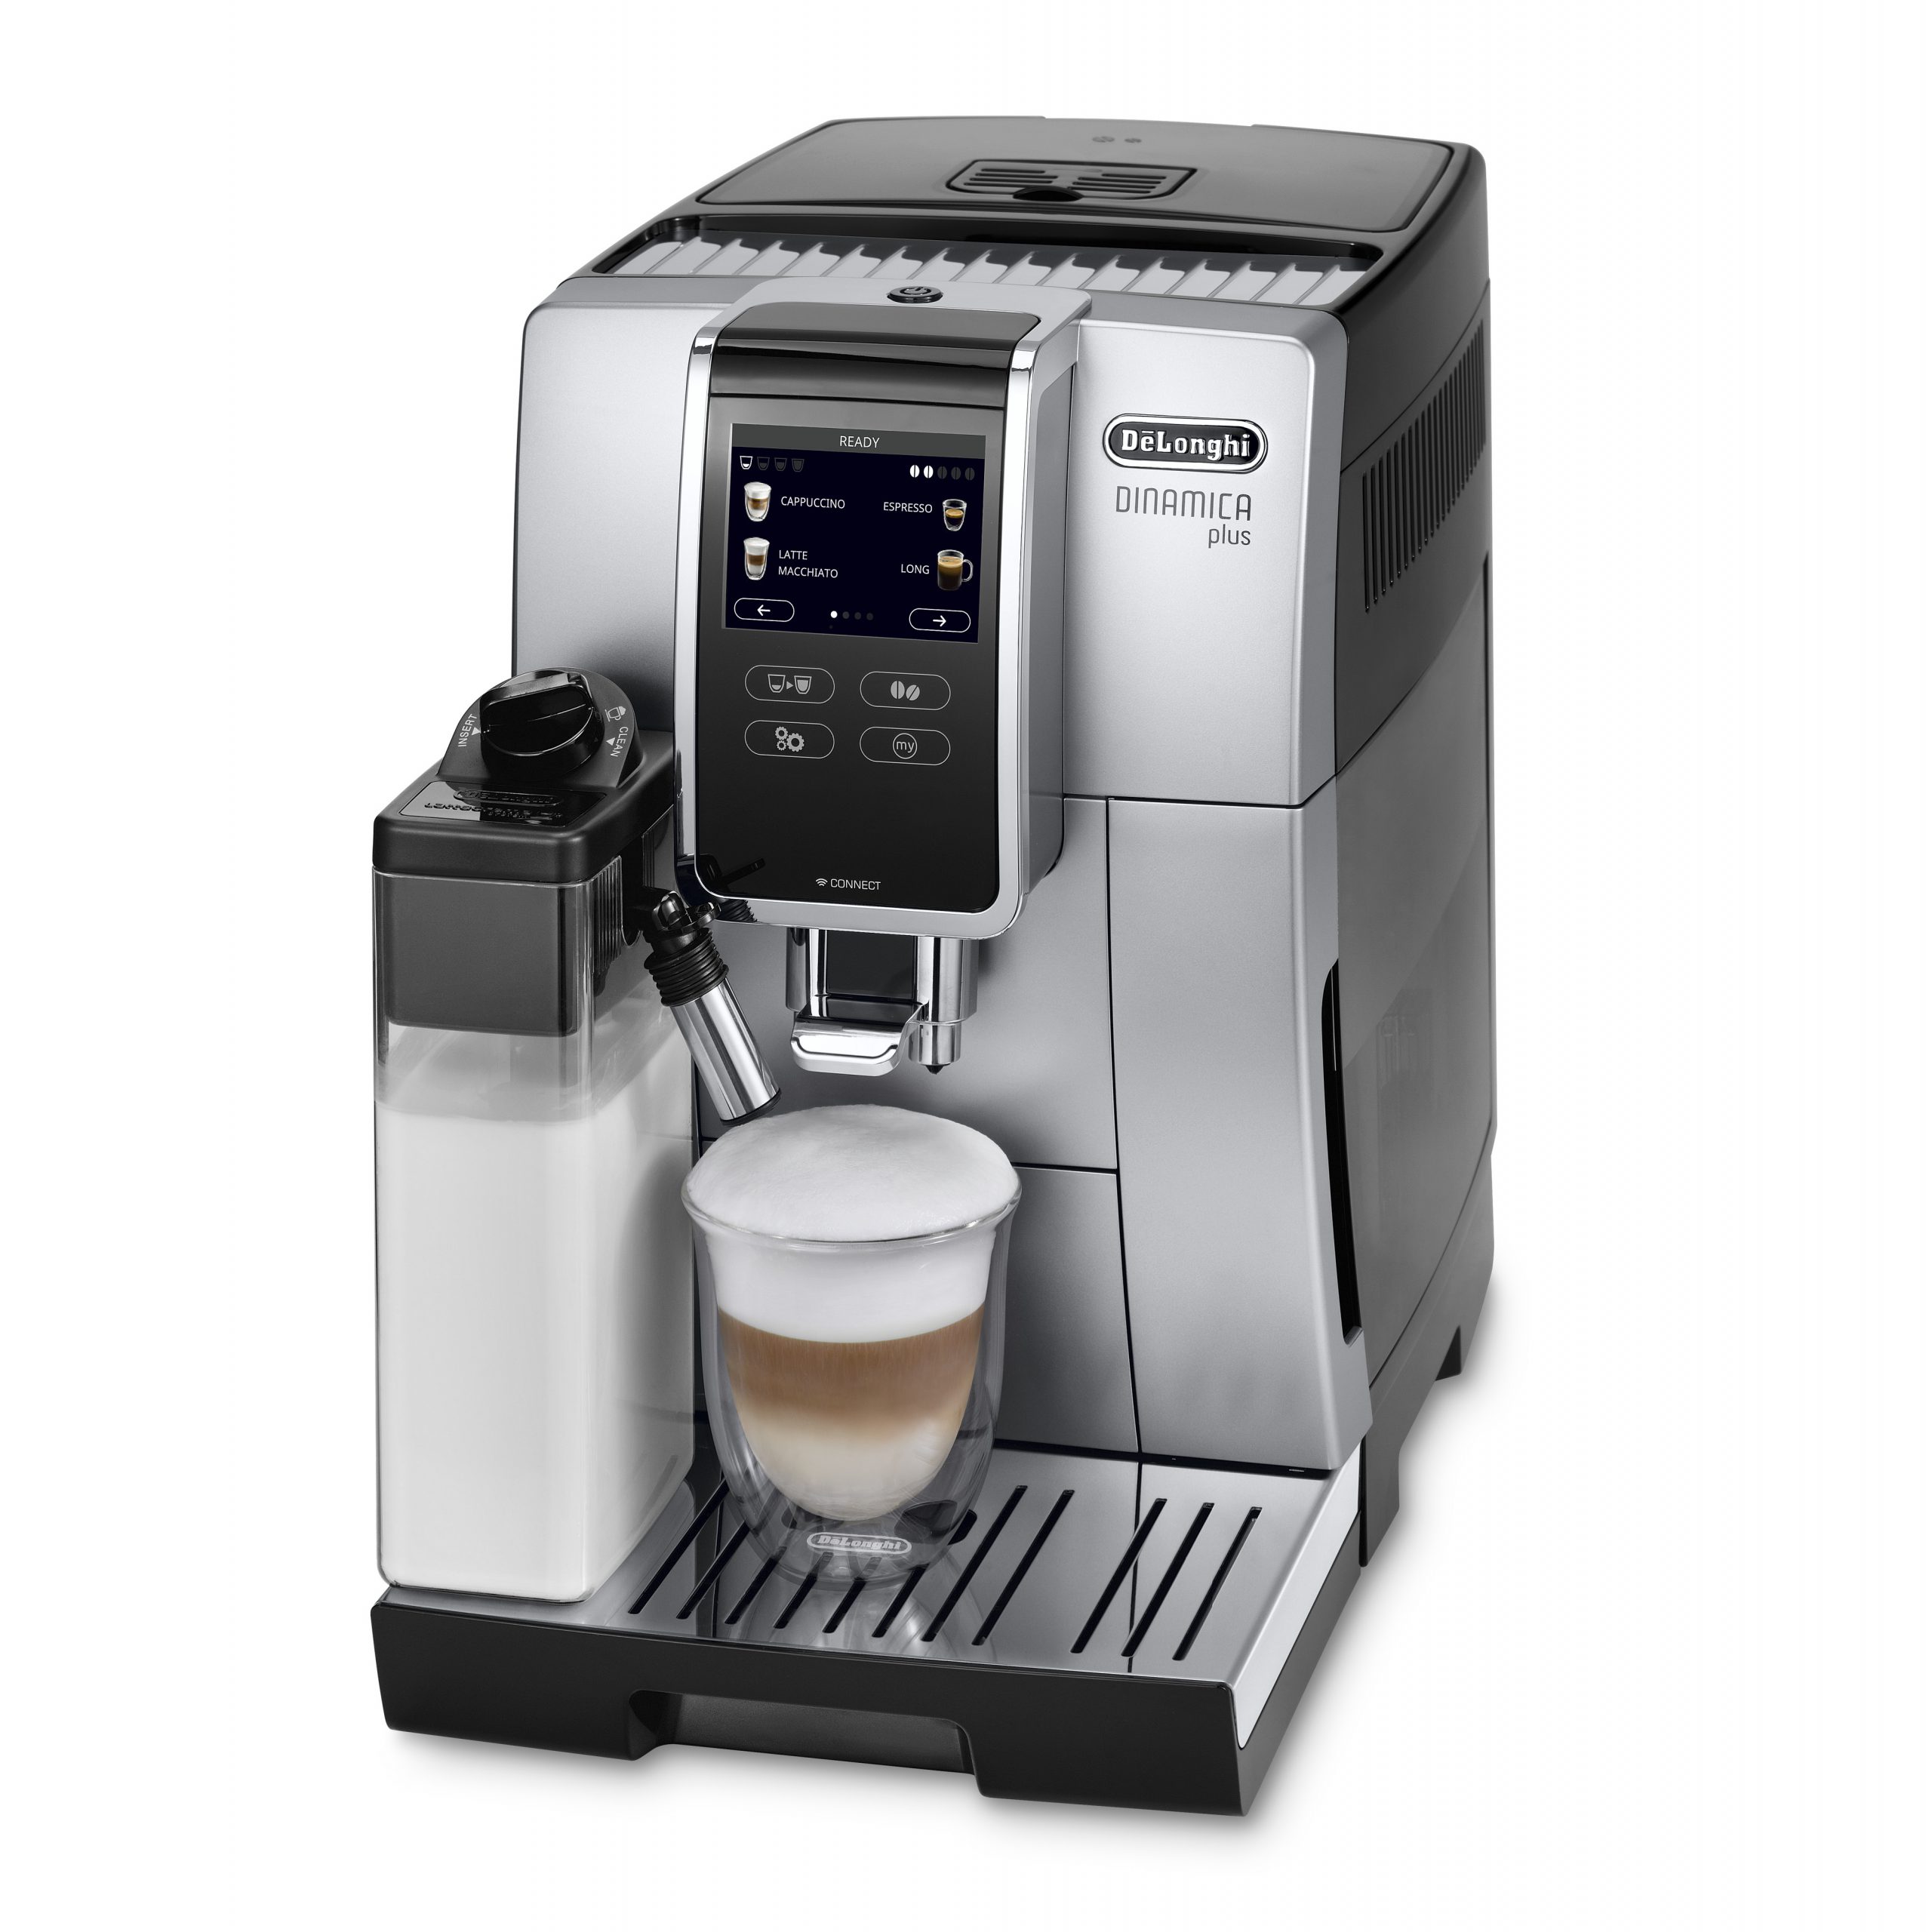 מבצע מעורר של DELONGHI: רוכשים מכונת קפה ונהנים מ-30 ימי ניסיון! ומקבלים גם ערכת פולי קפה של המותג STARBUCKS